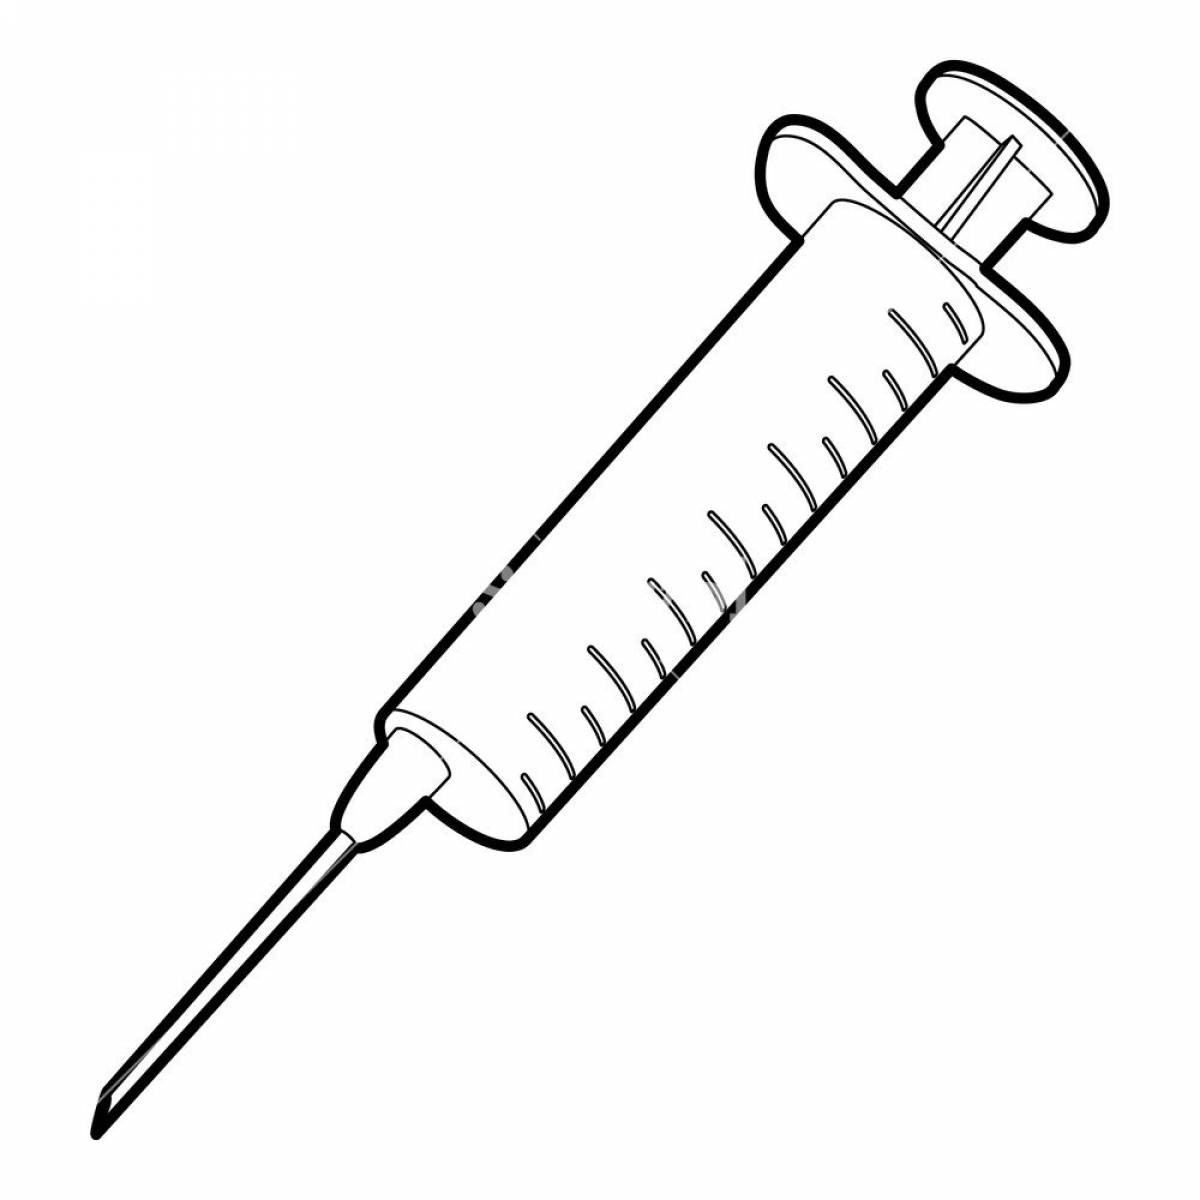 Coloring jovial syringe for children